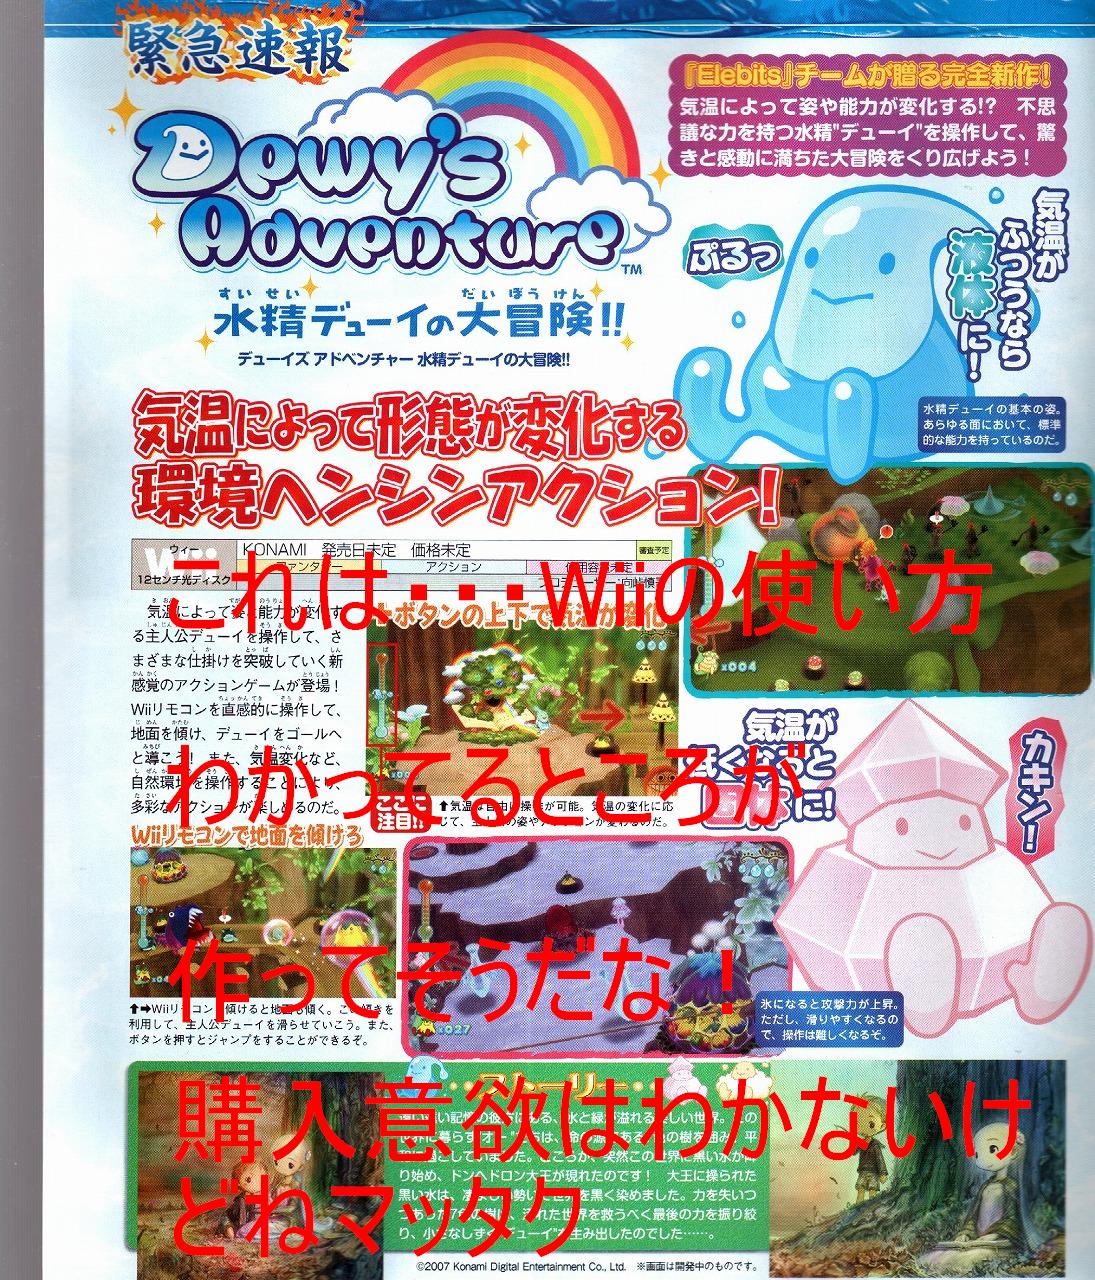 Dewy’s Adventure Scan